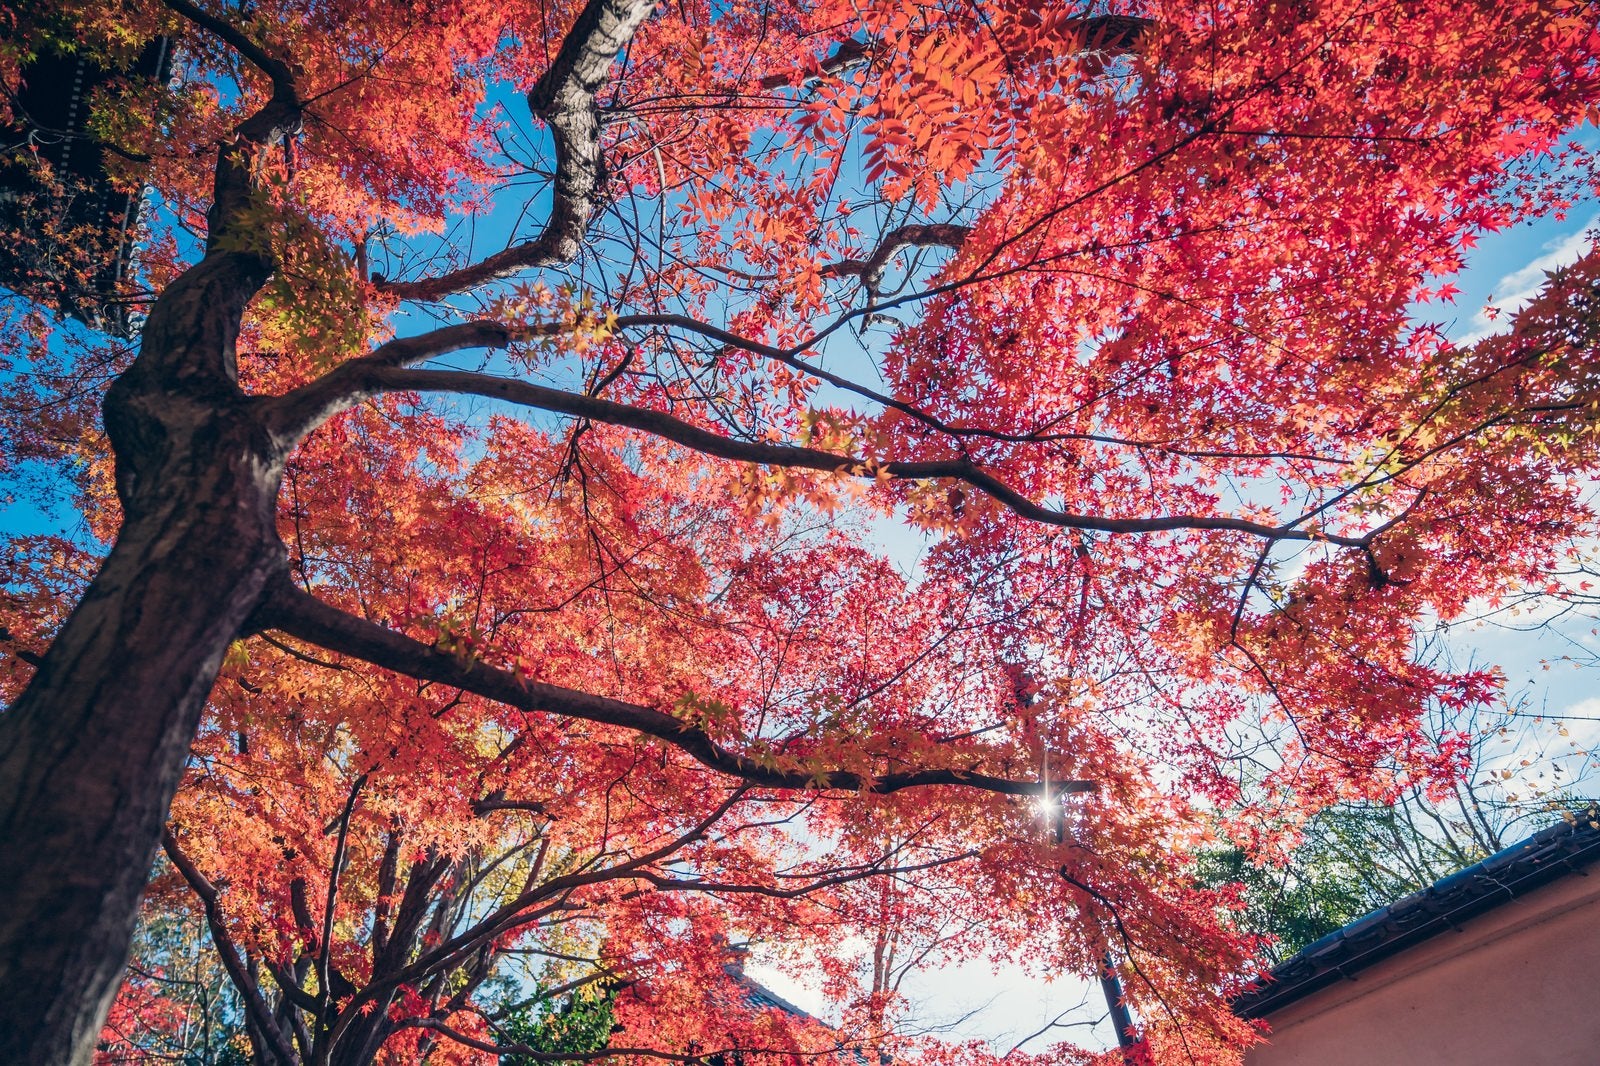 「紅葉した木と秋空」の写真